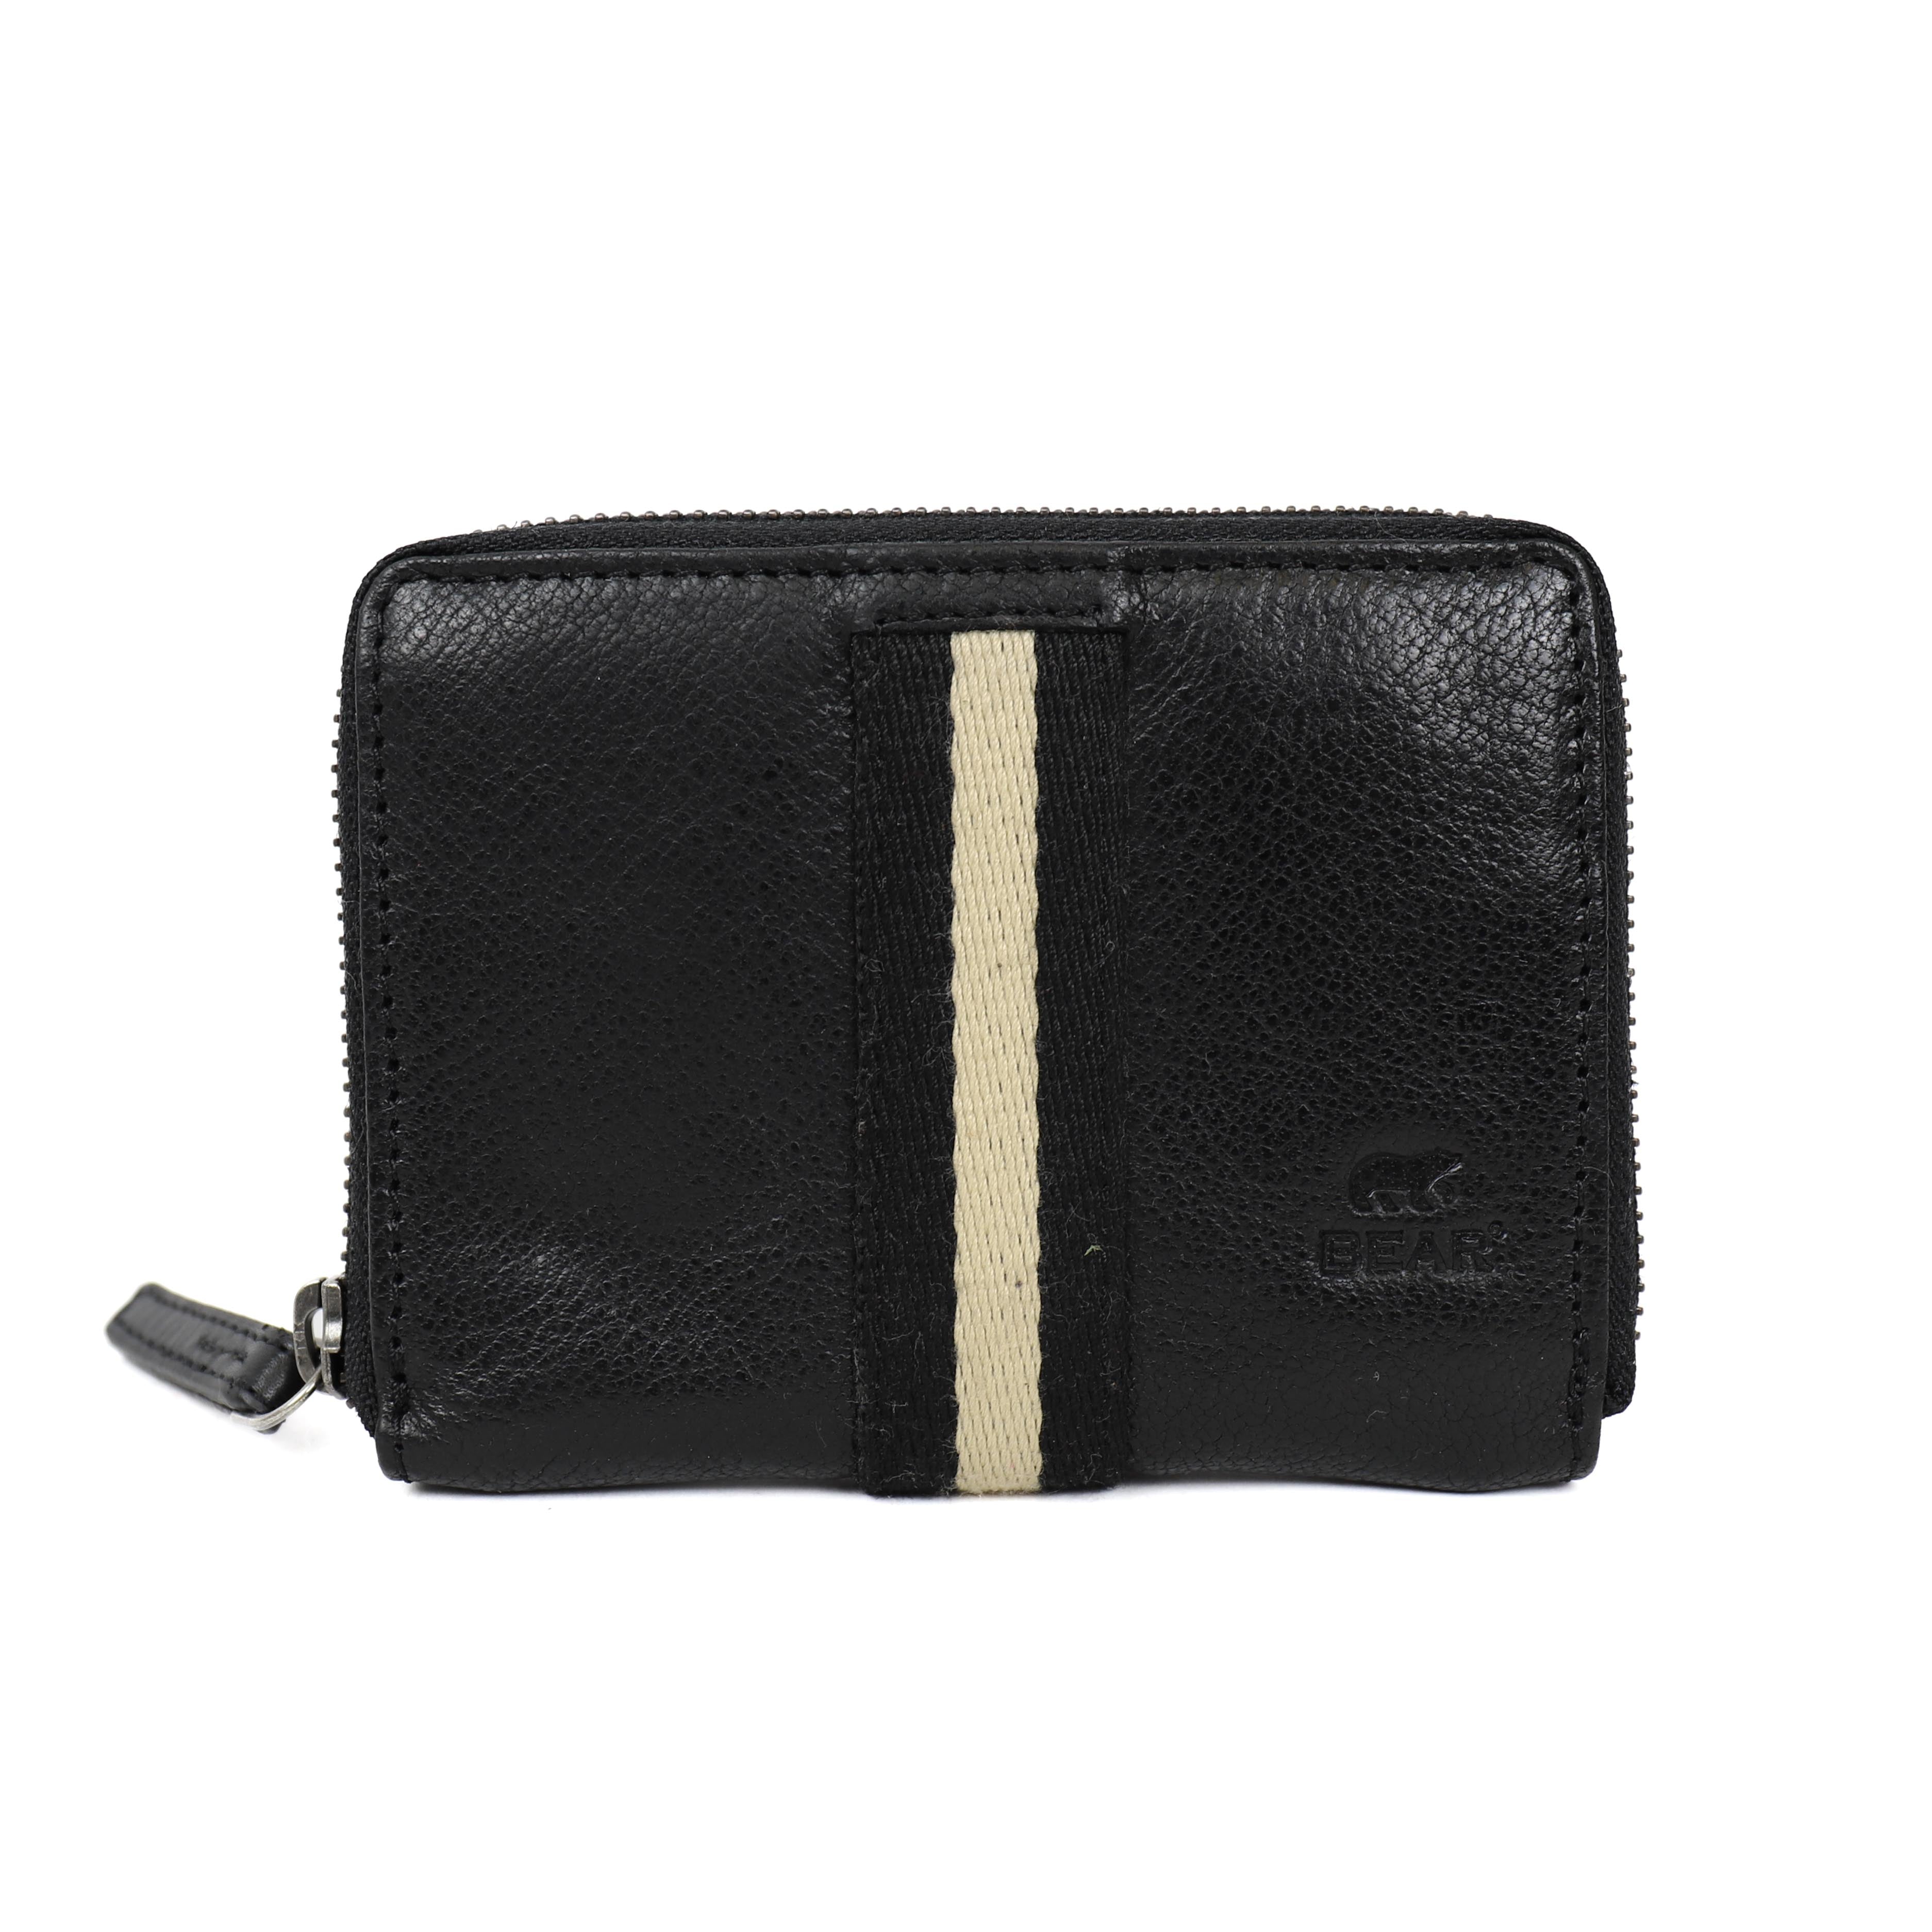 Zipper wallet 'Yanet' black/stripe